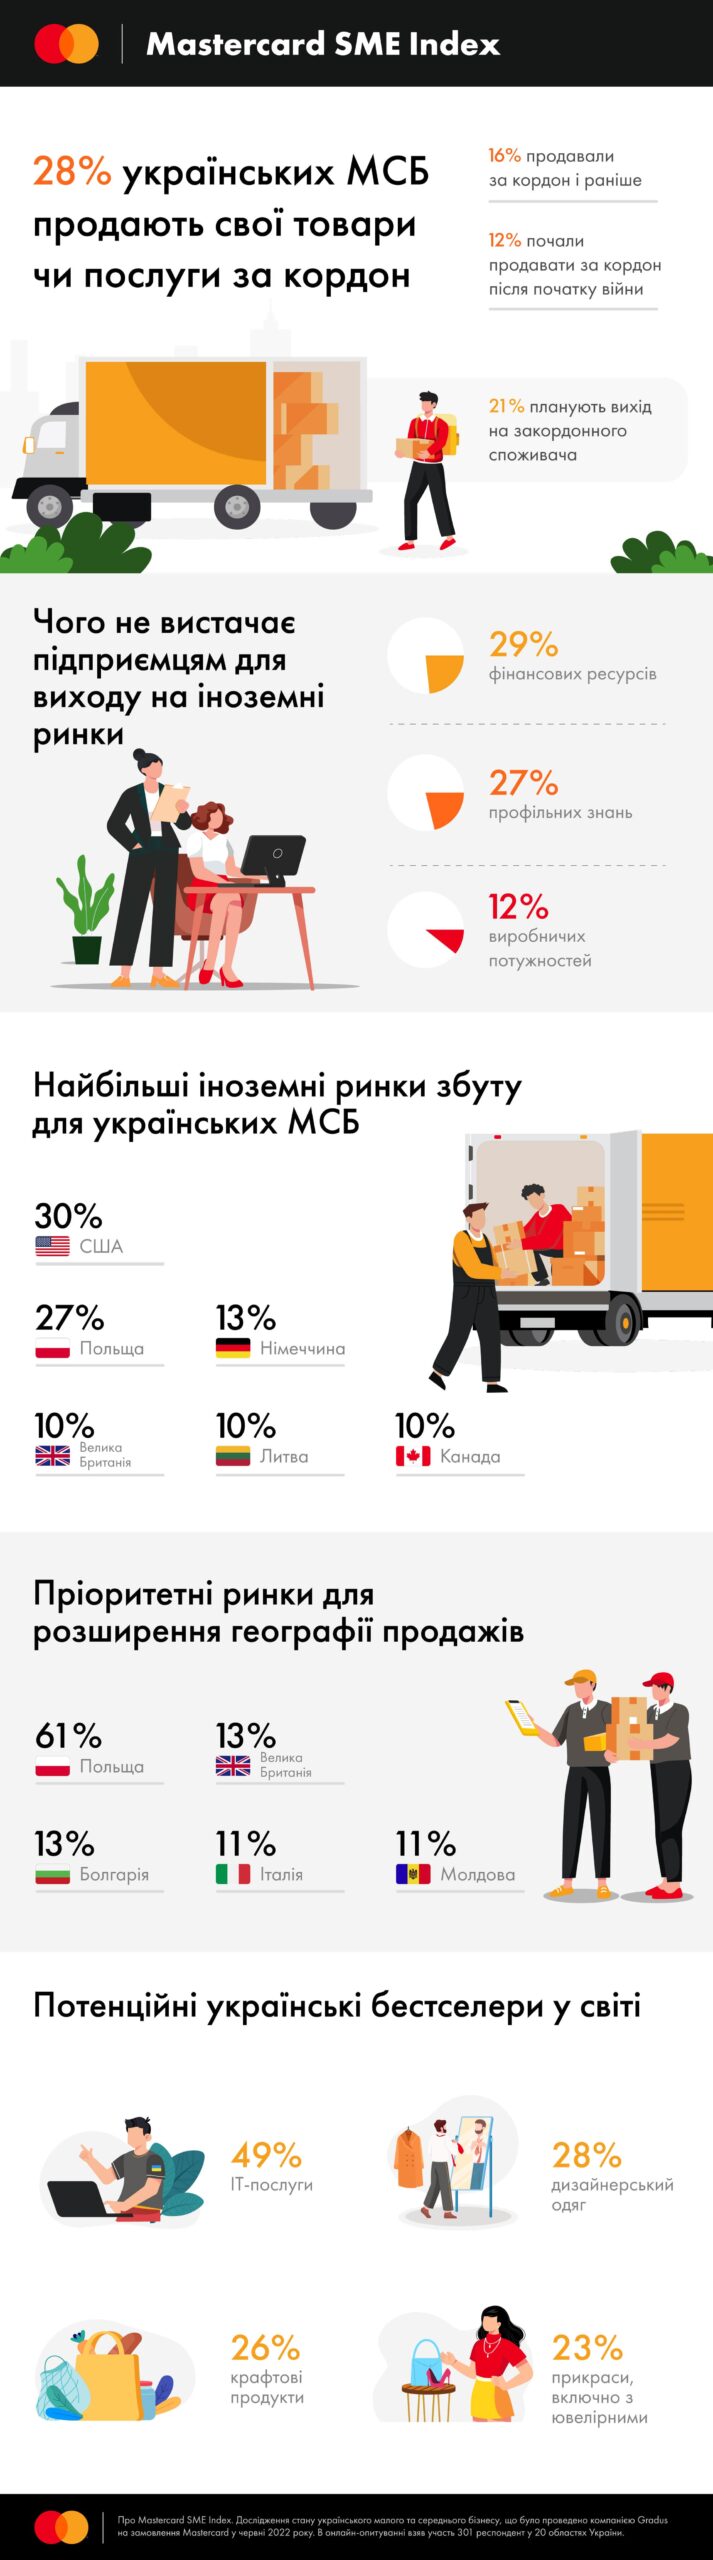 Половина підприємців вважають ІТ-послуги потенційним українським бестселером у світі – дослідження Mastercard - press-release, entrepreneurship, news, business